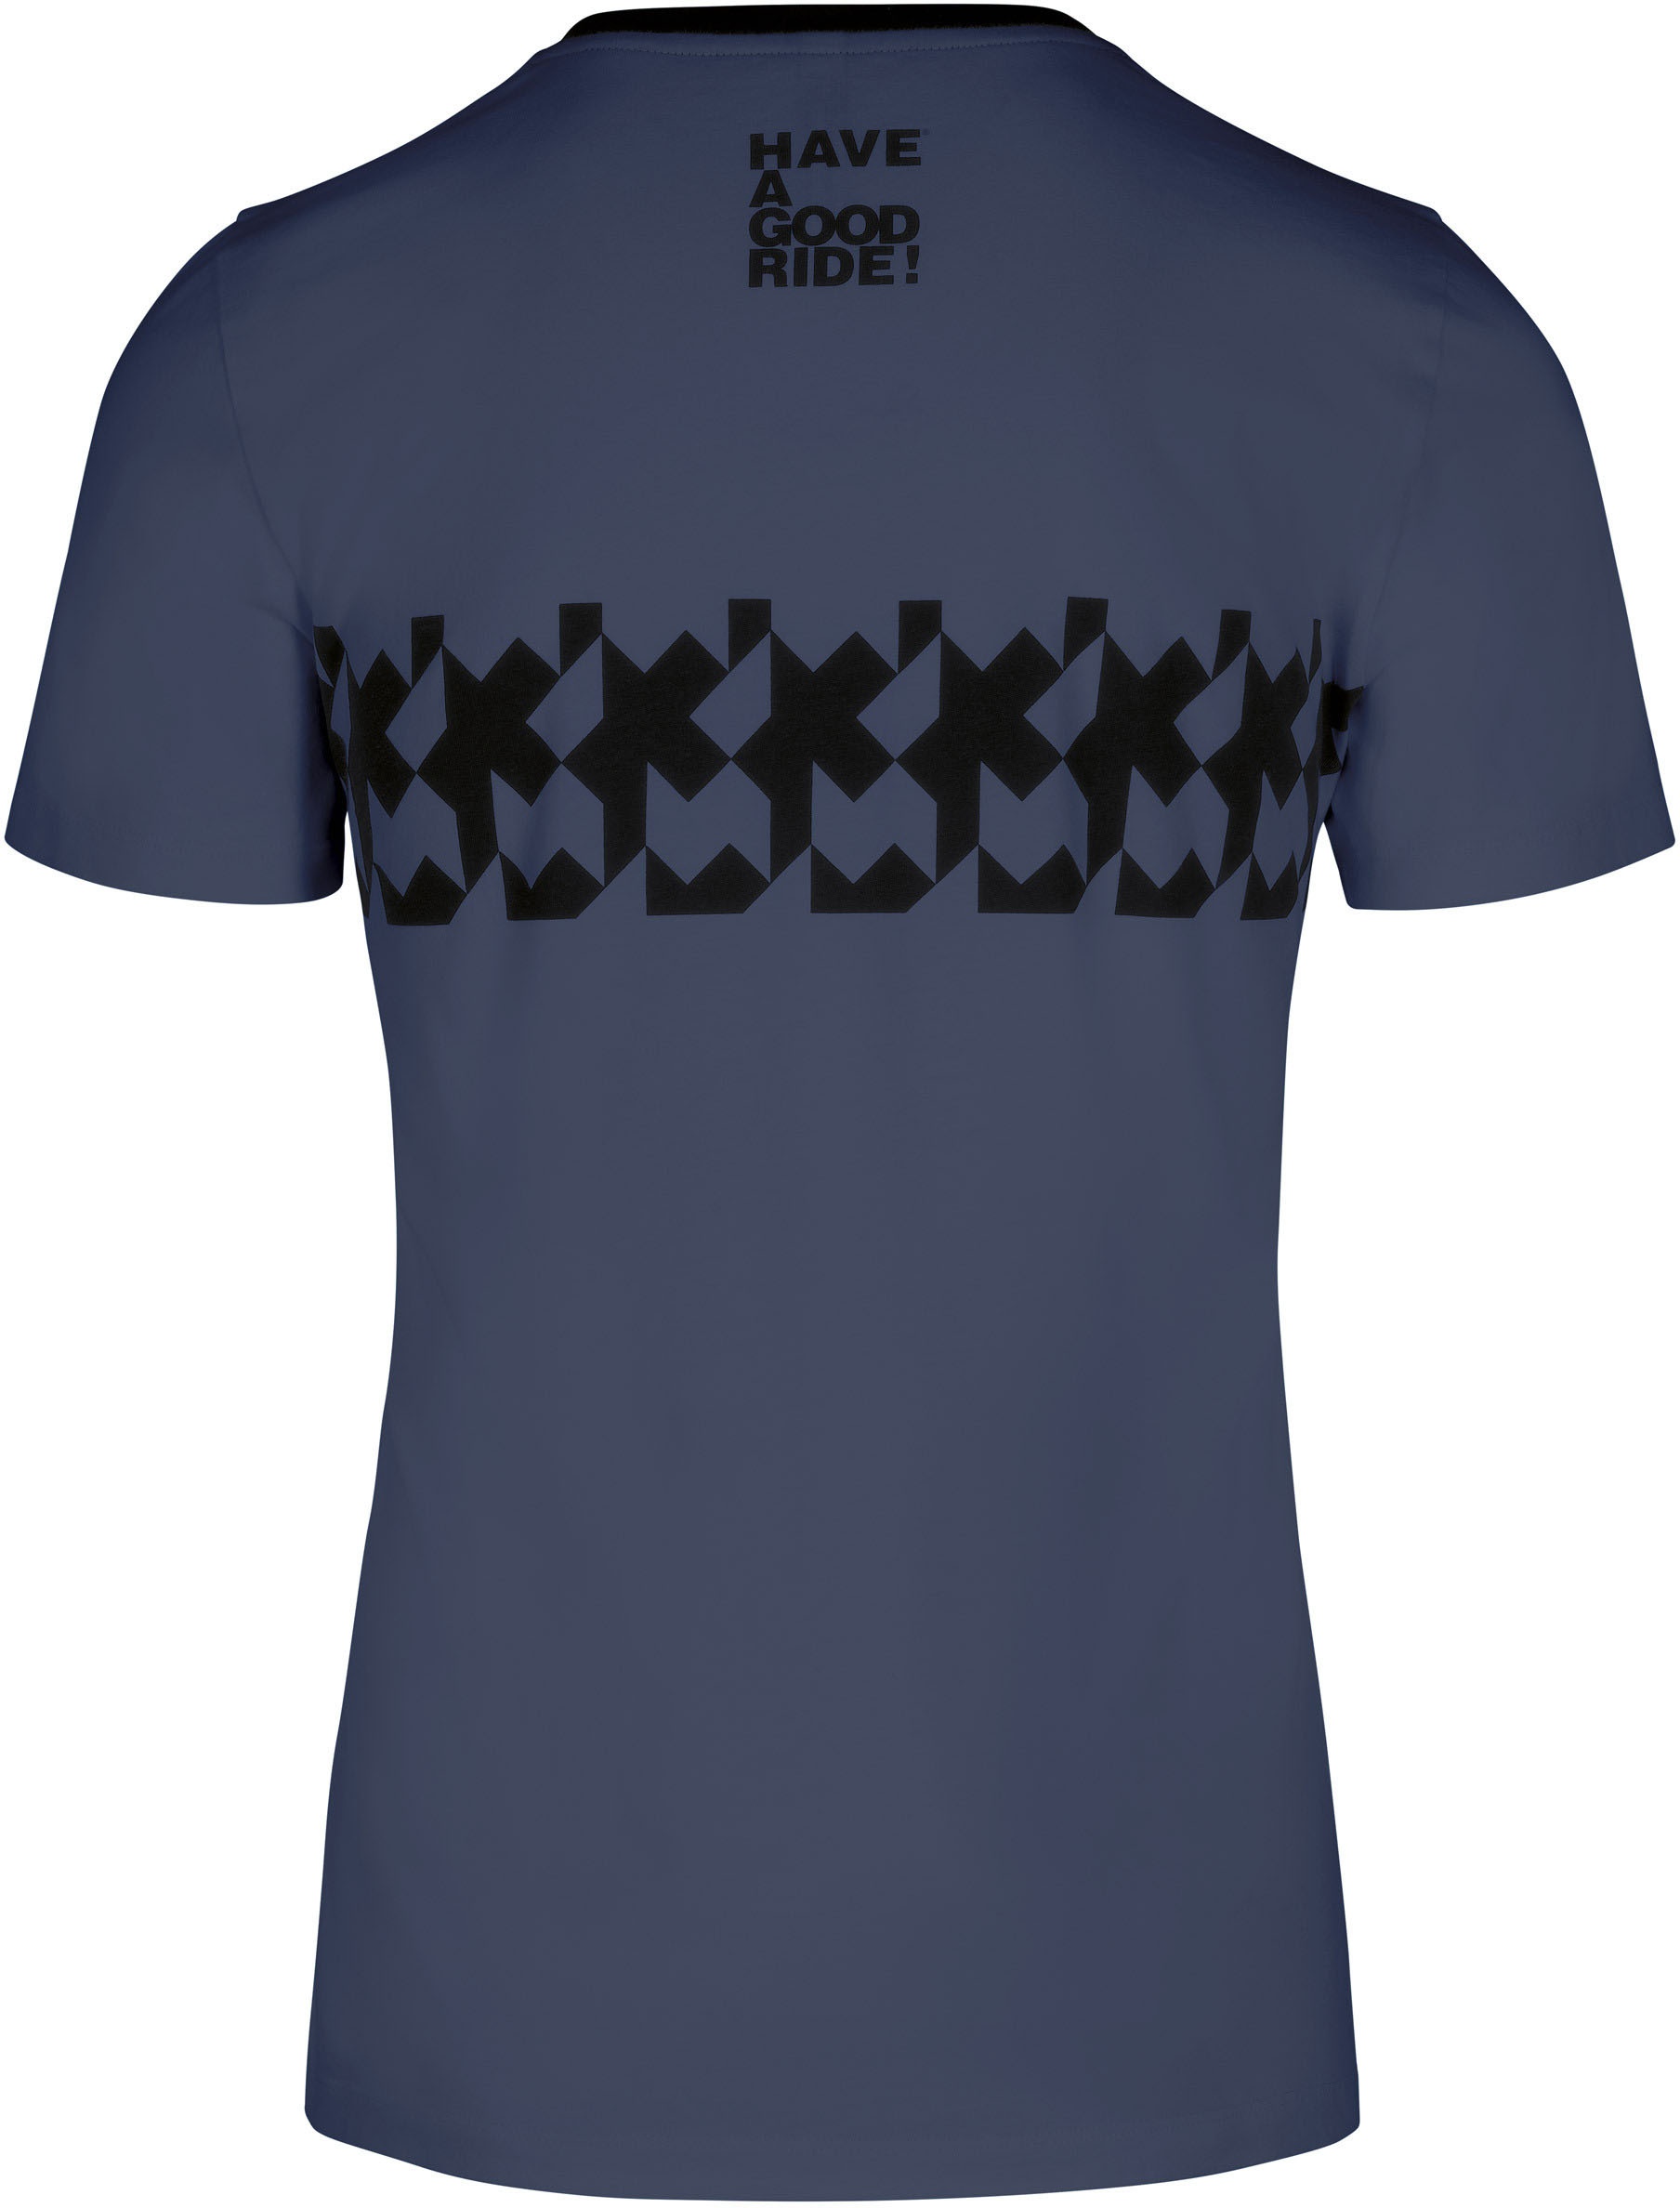 Beklædning - Merchandise - Assos SIGNATURE Summer T-Shirt RS Griffe - Blå